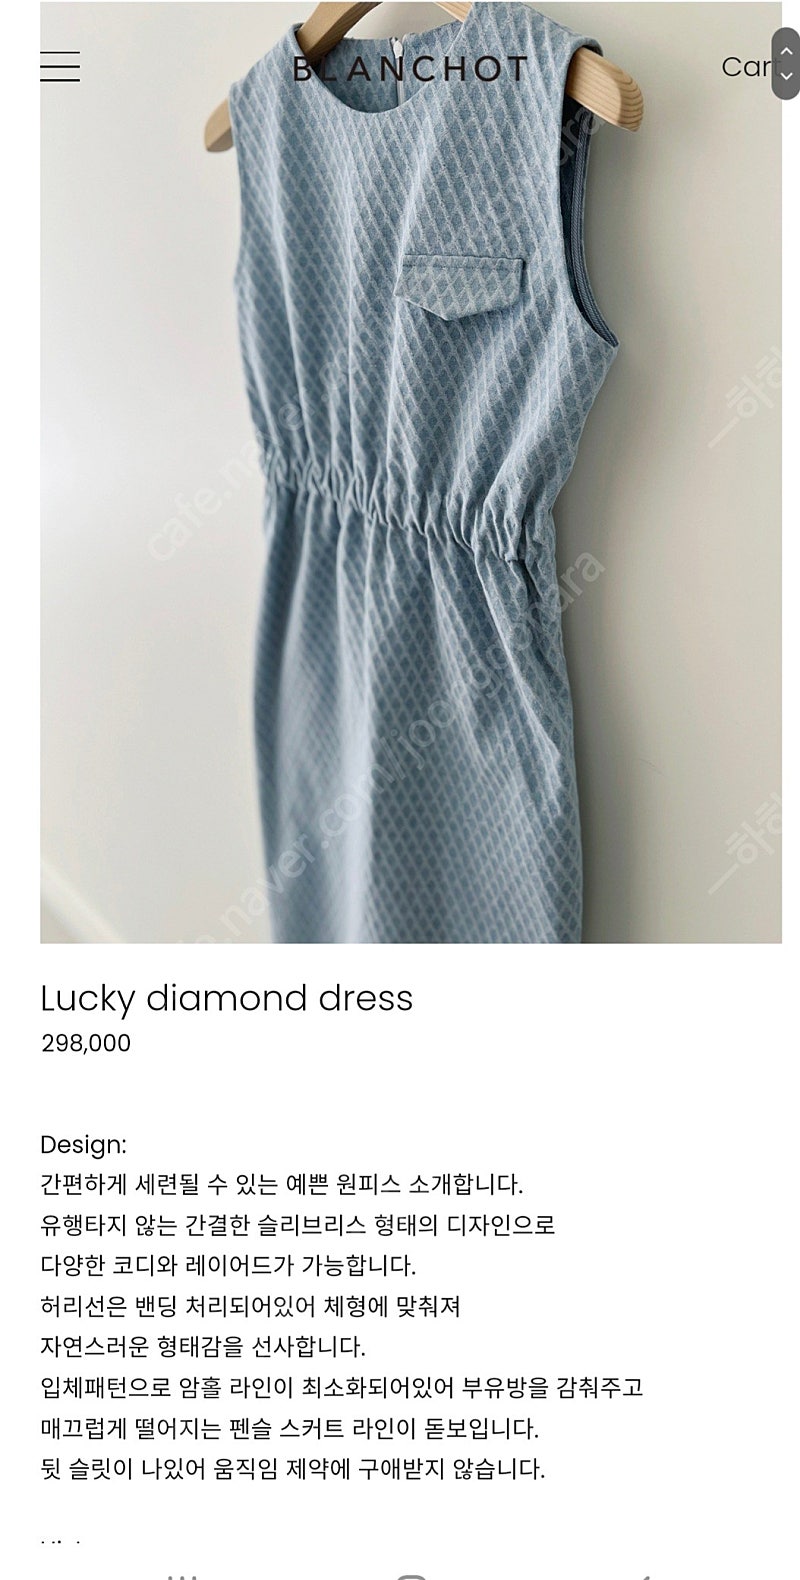 블랑쇼 럭키 다이아몬드 드레스 1사이즈(XS-S) 새상품